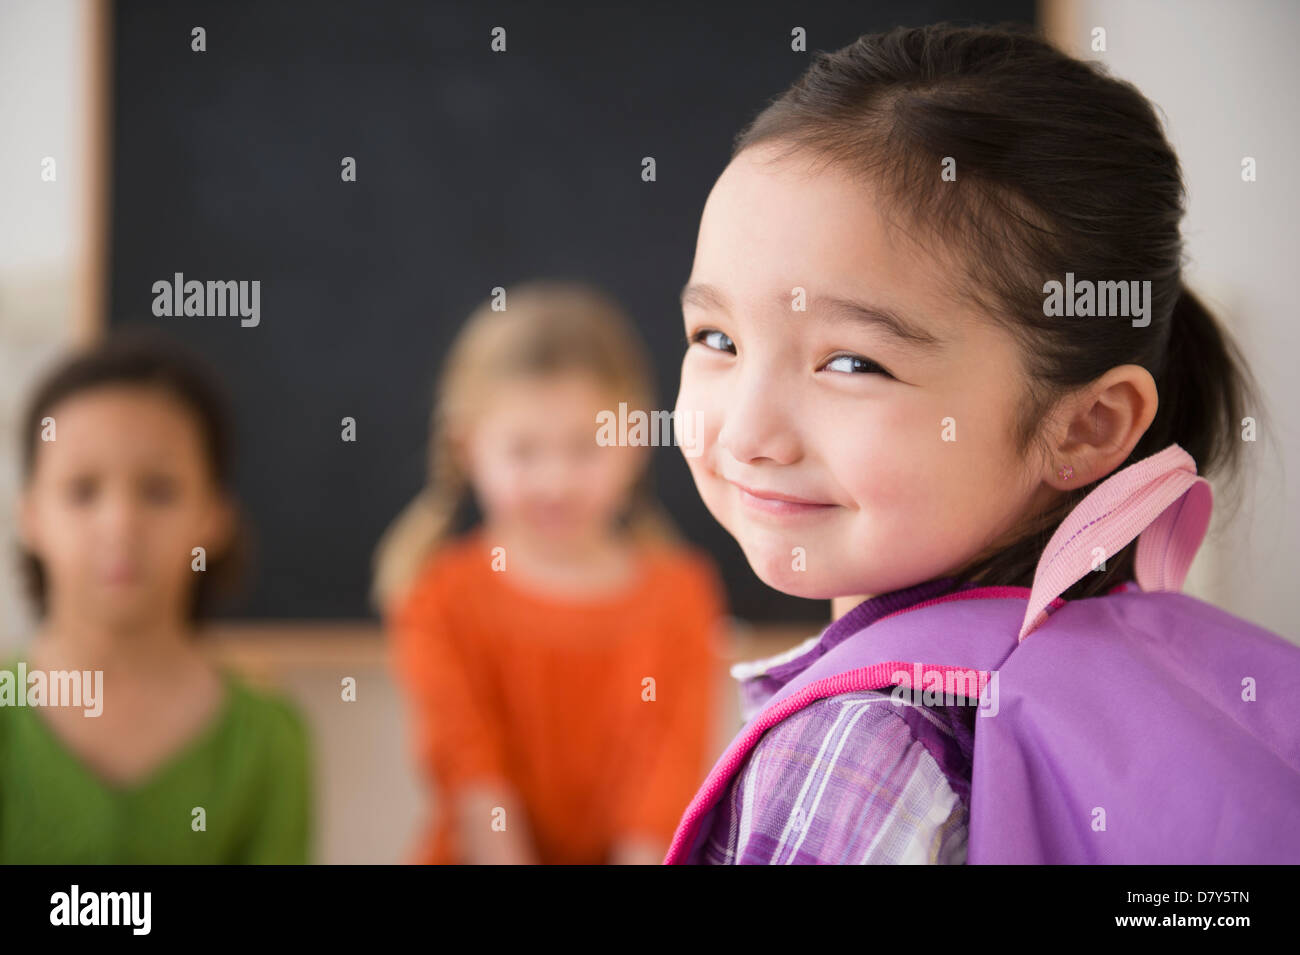 Smiling girl looking over her shoulder Banque D'Images